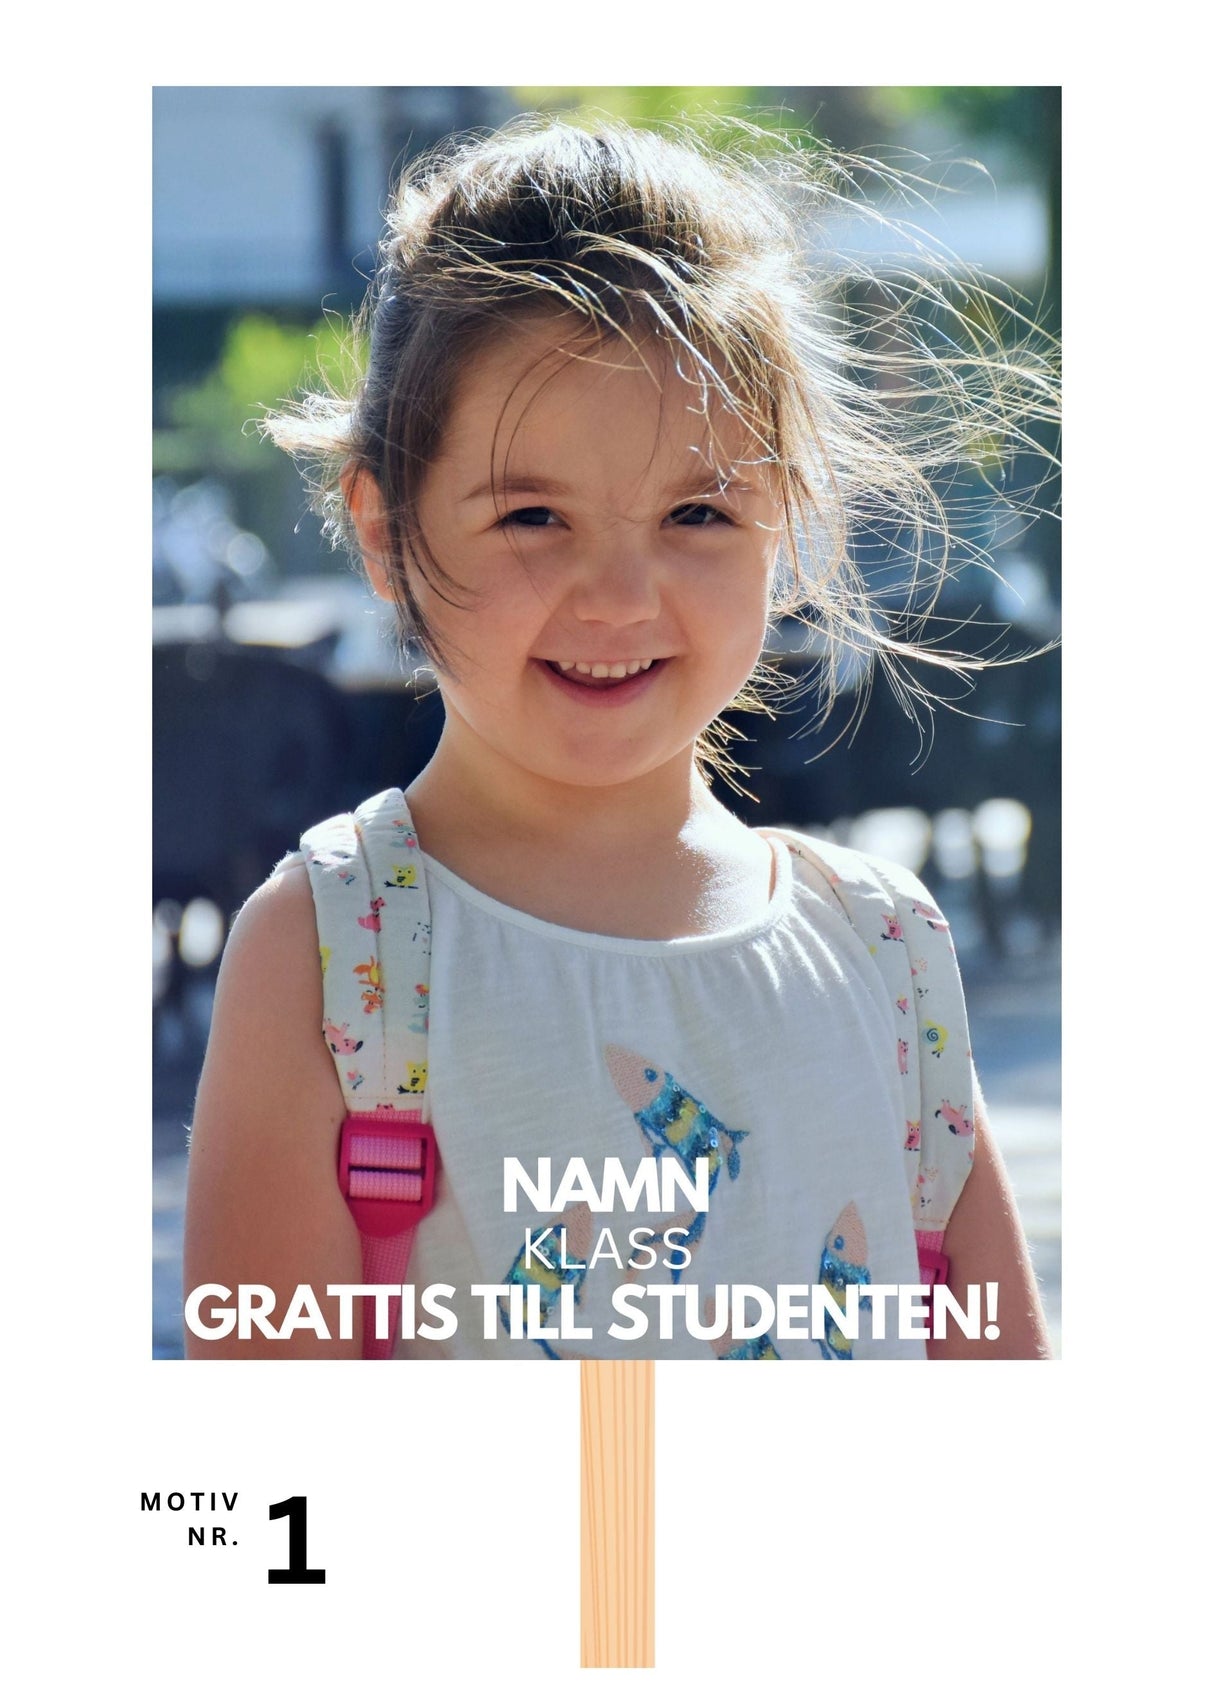 Studentskylt och studentplakat i Vaxholm